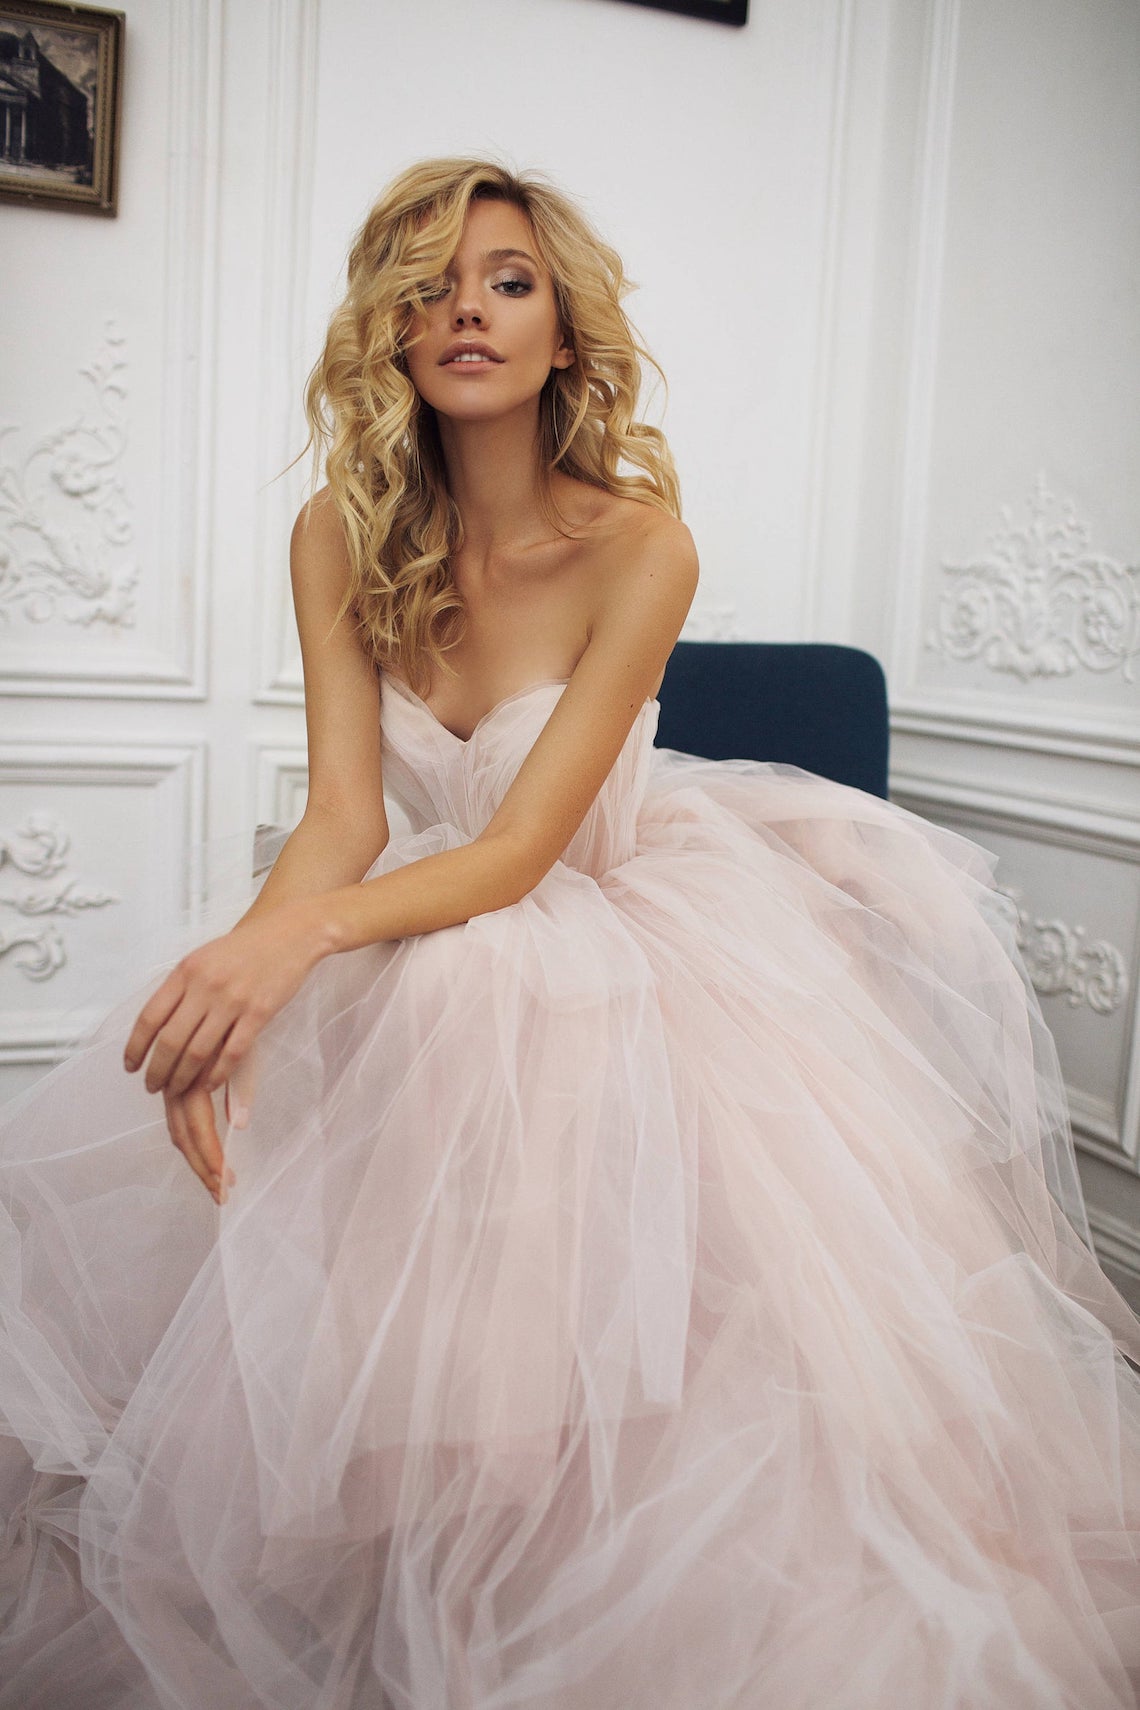 Mila Bridal Blush Pink Tulle Wedding Dress Best Pink Wedding Dresses for 2021 2022 Brides Bridal Musings 1 - 30 chiếc áo dài cưới màu hồng dành cho cô dâu yêu thích sắc màu